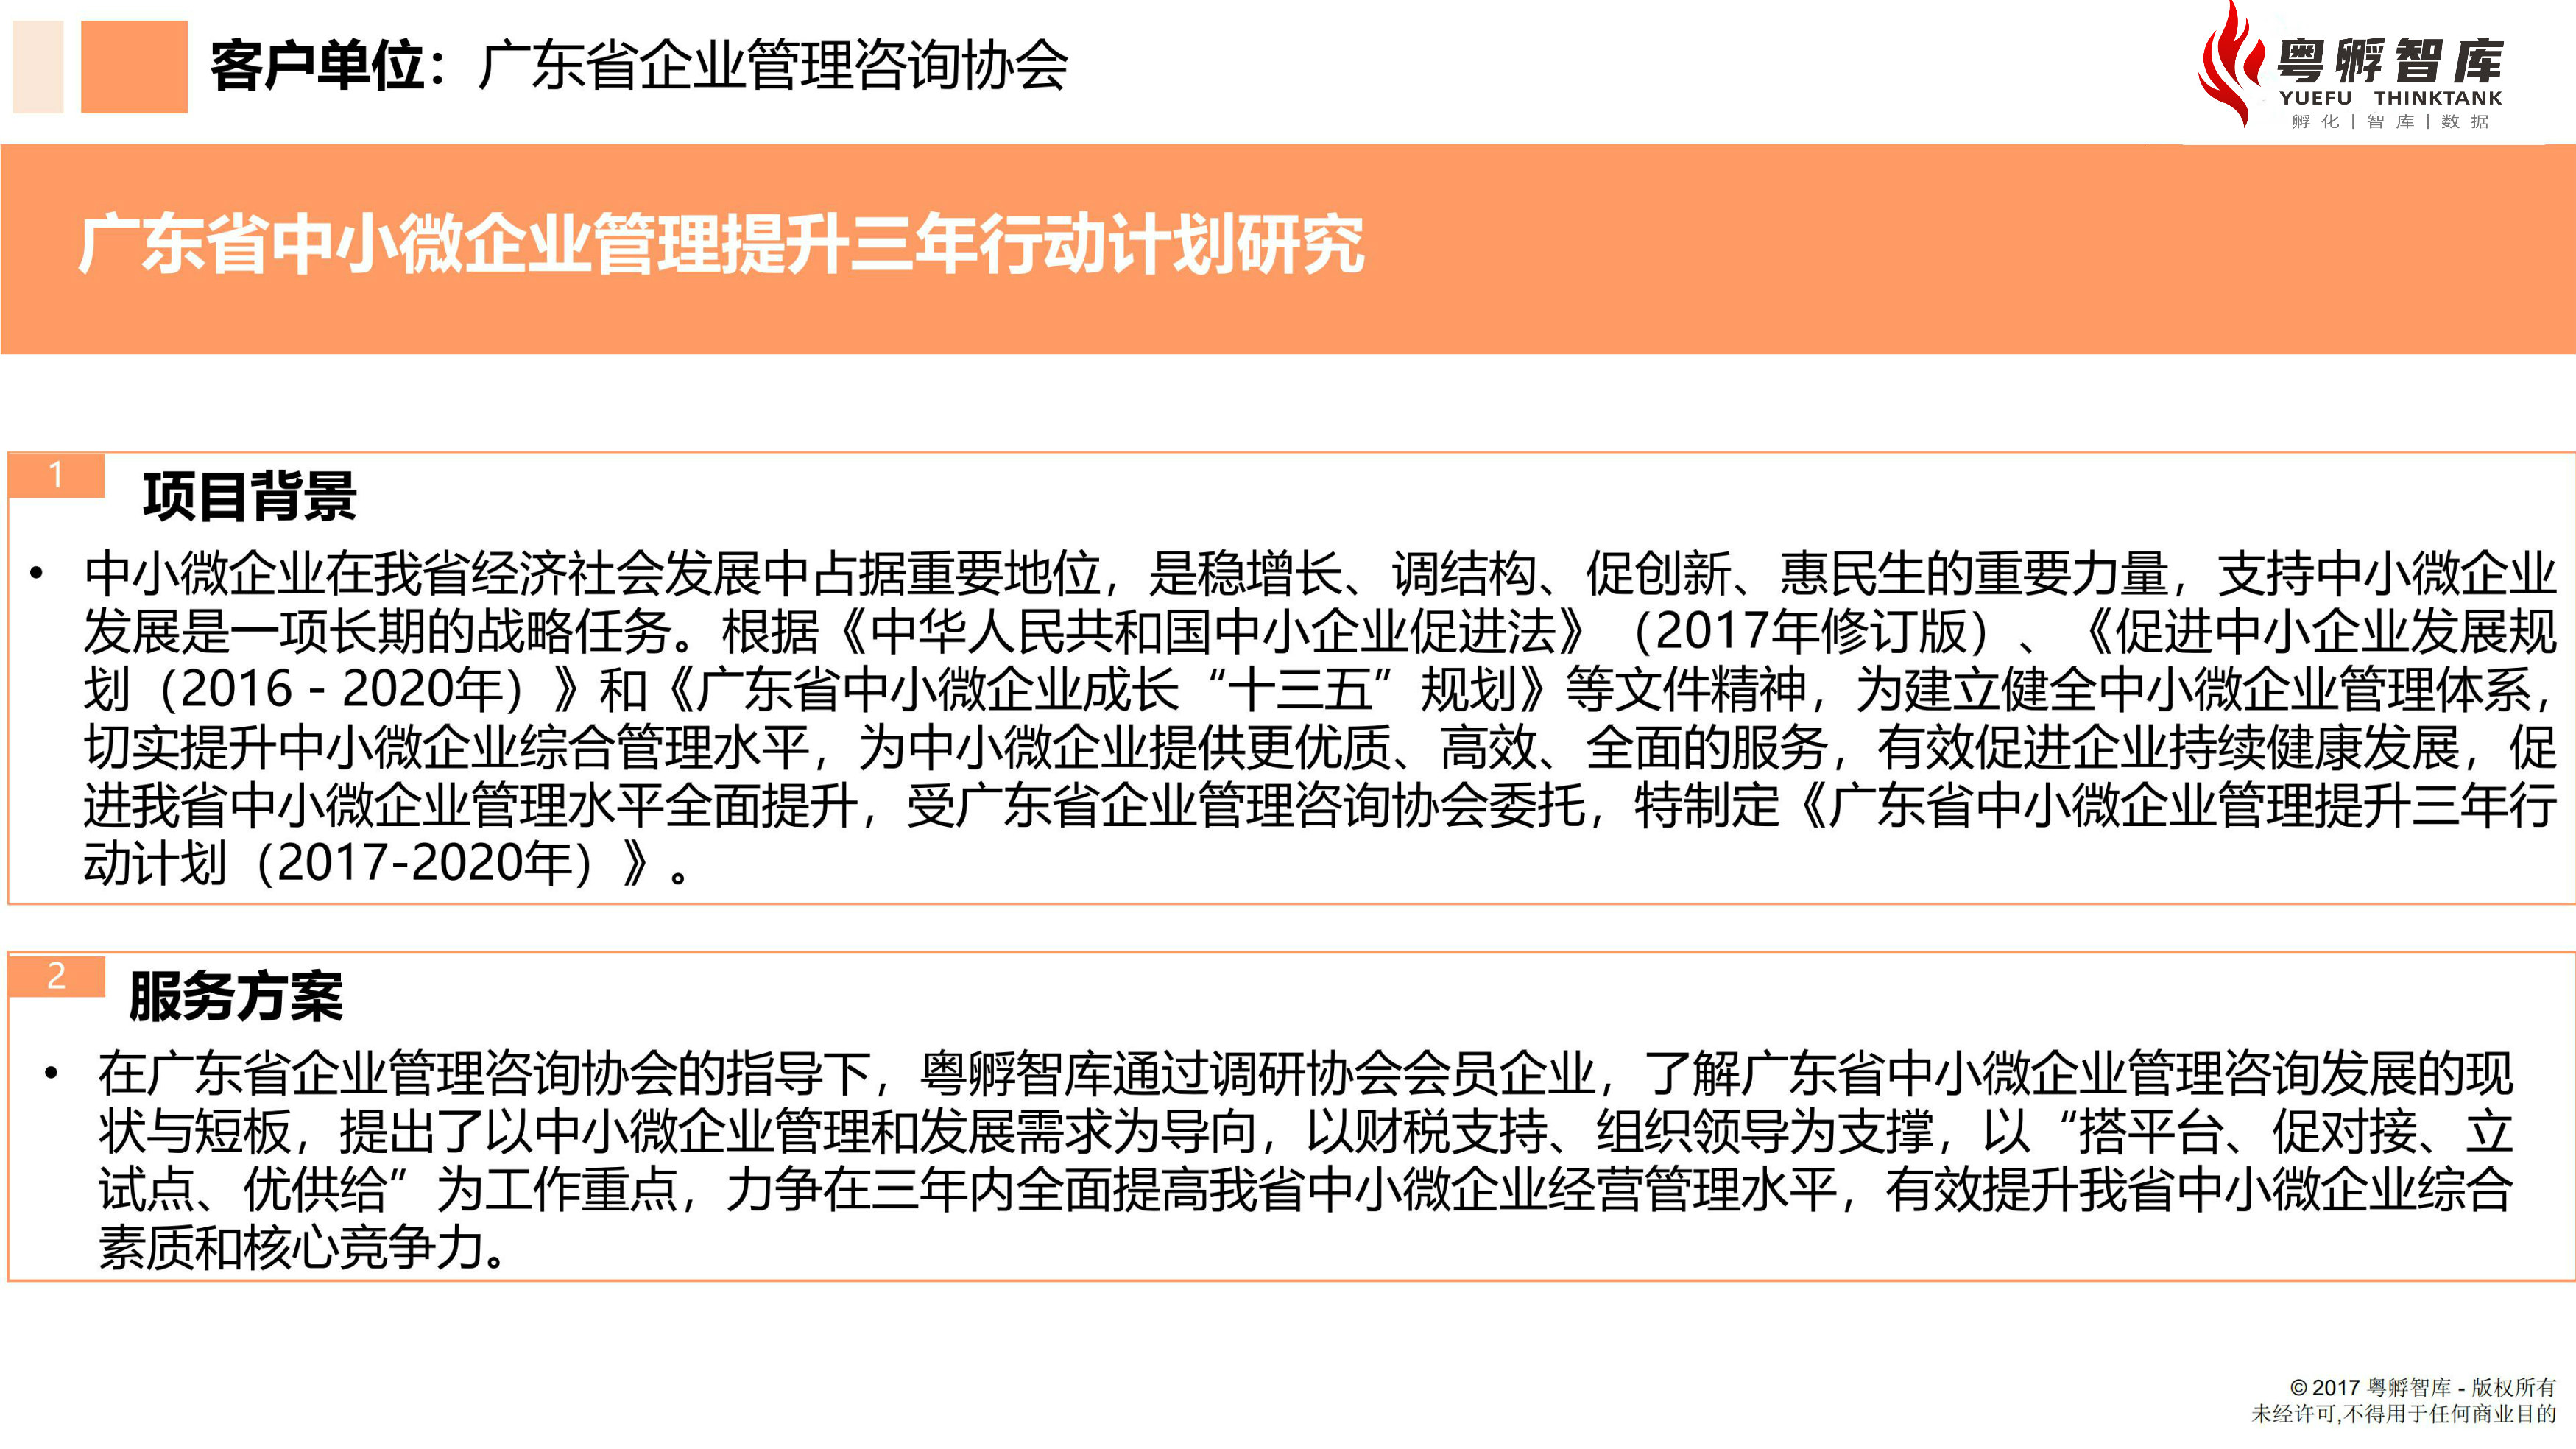 广东省中小微企业管理提升三年行动计划-2.jpg